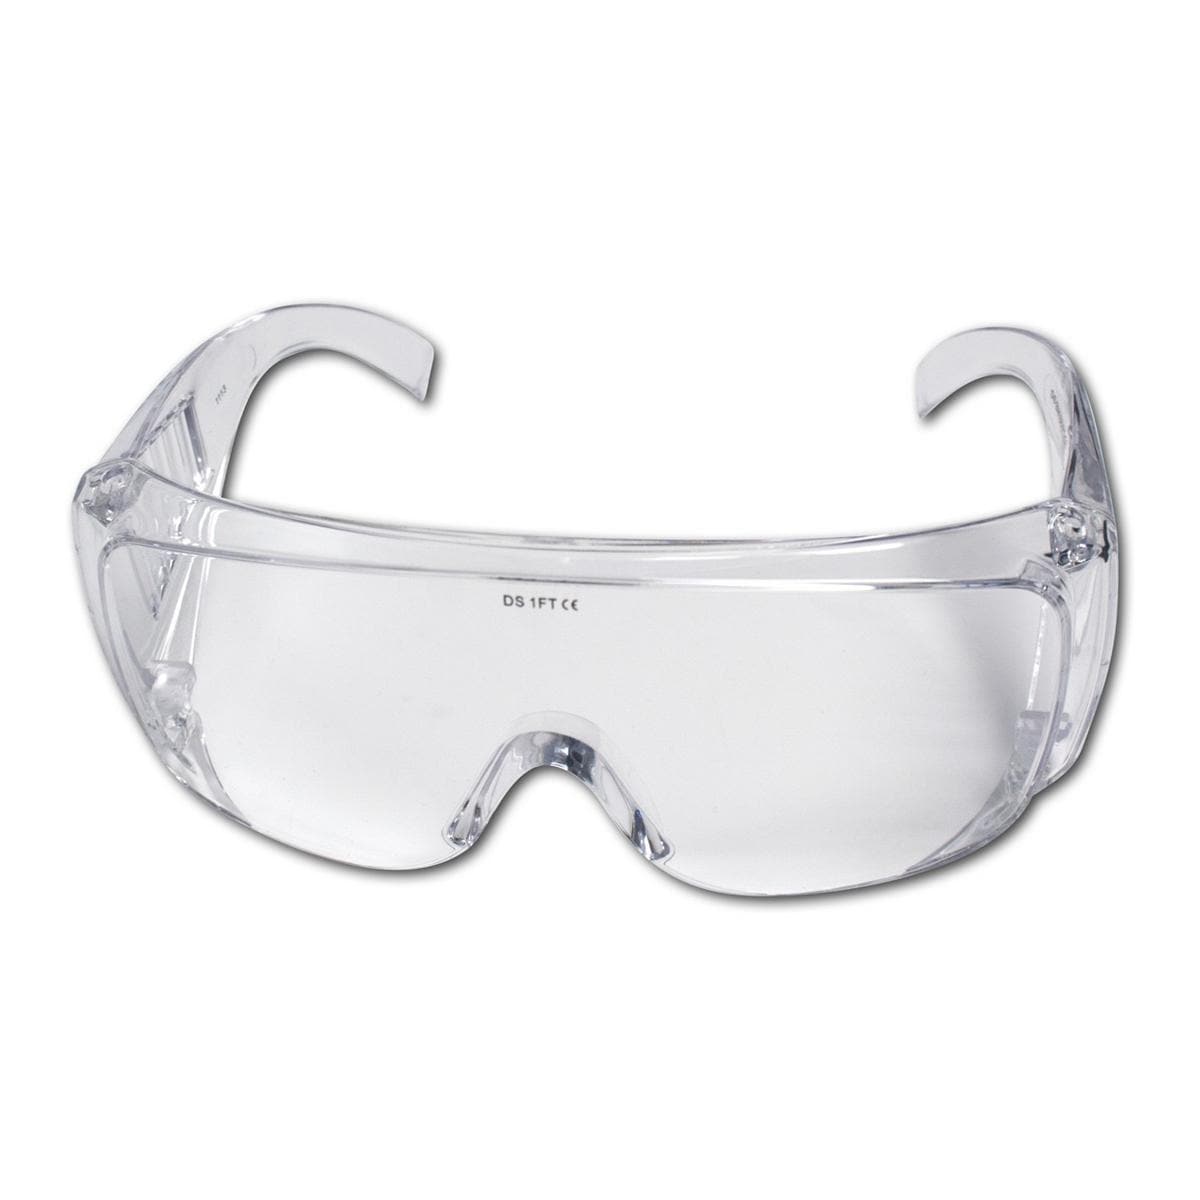 Lunettes de protection - pour les lentilles de lab, transparentes et avec rainures de ventilation